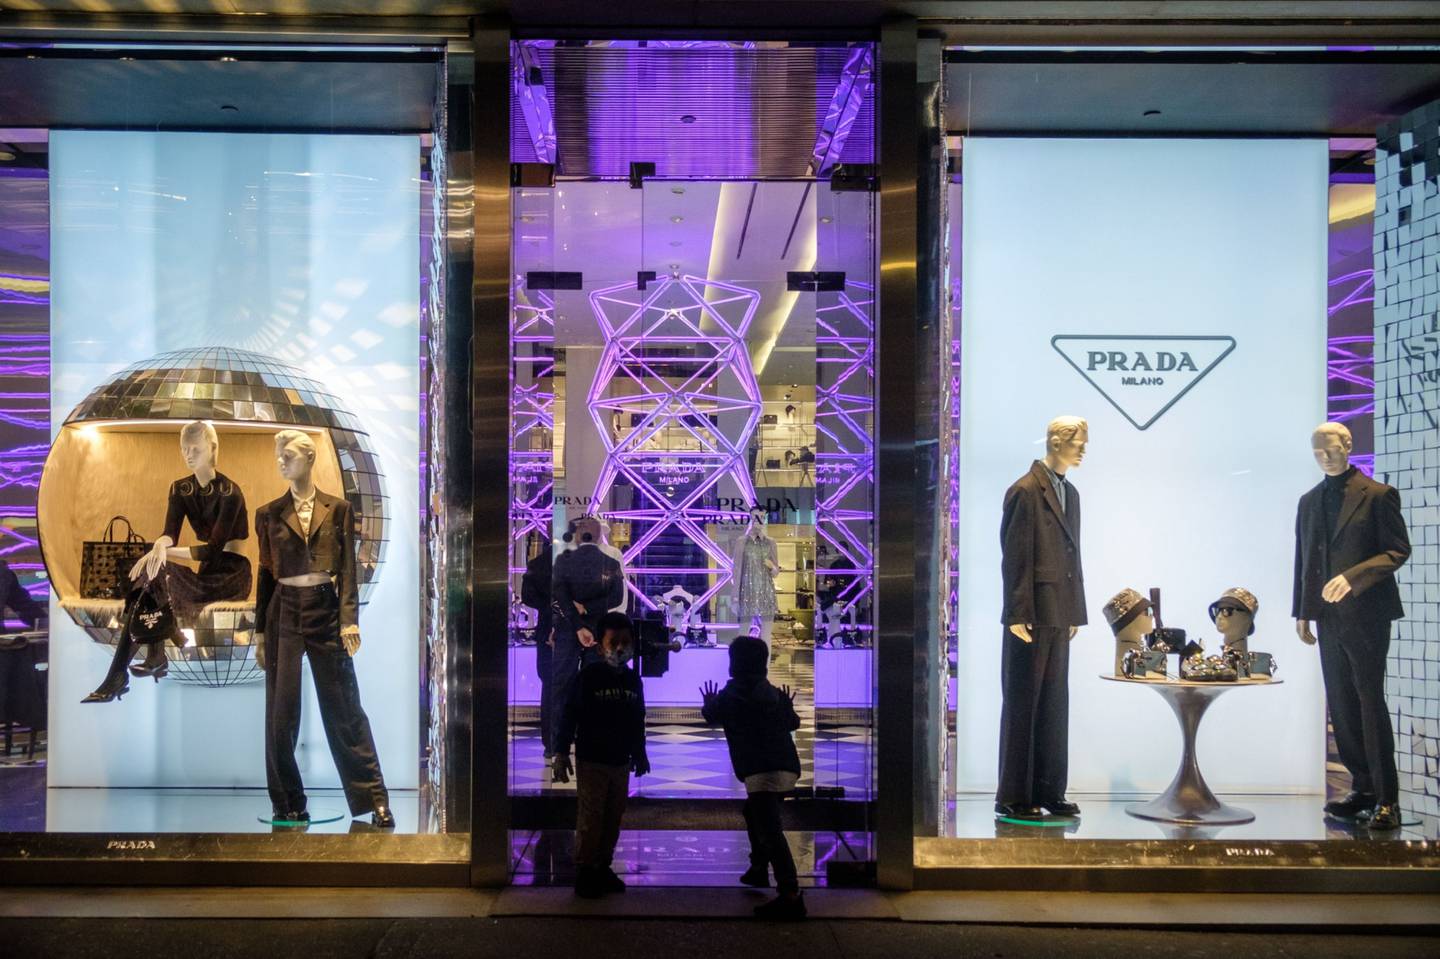 Prada quiere crear una marca de lujo más ecológica con su futuro CEO